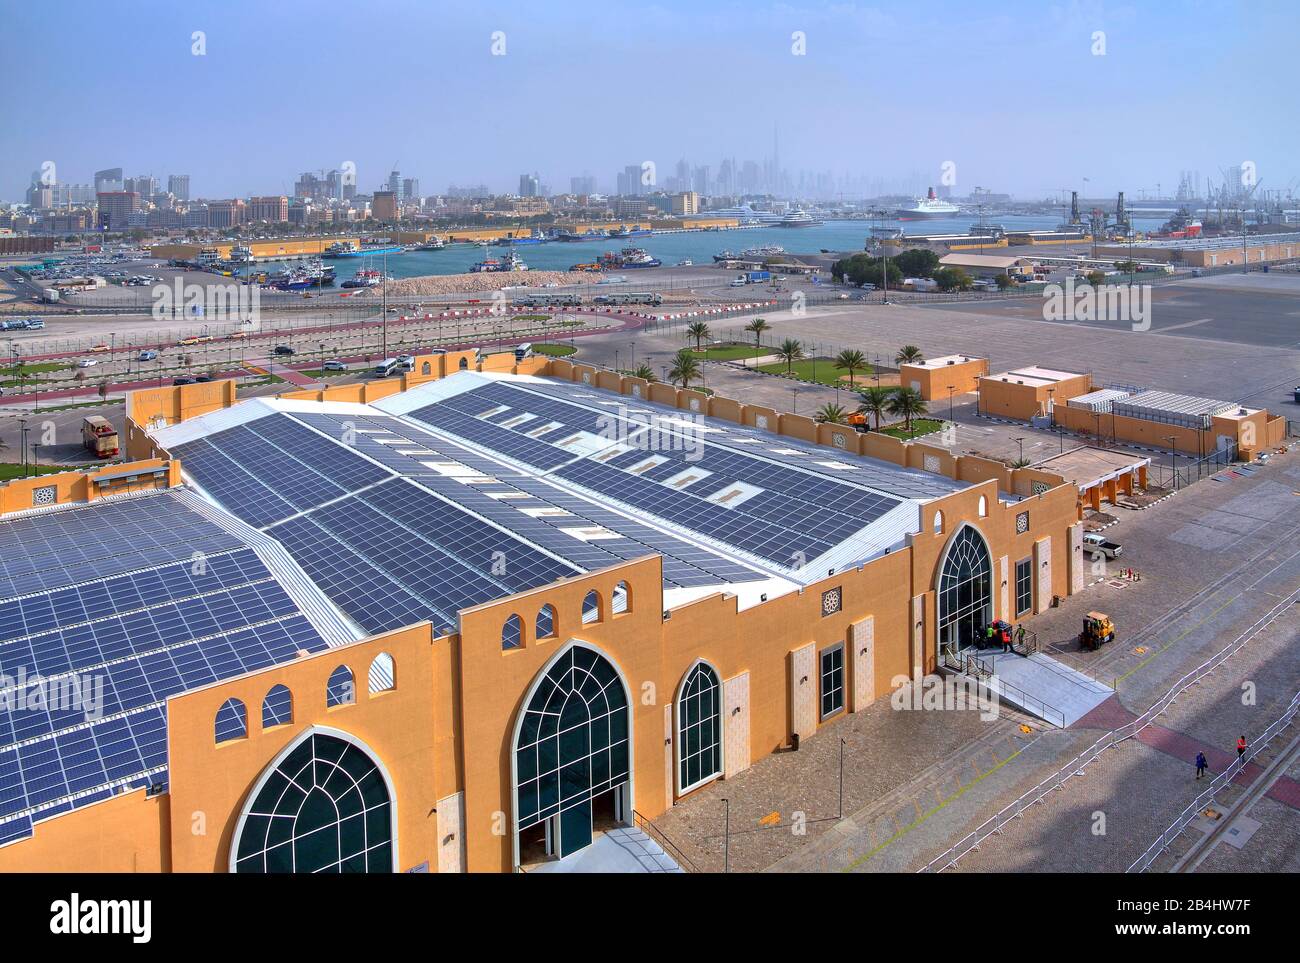 Kreuzfahrtterminal im Hafen mit Blick auf die Stadt, Dubai, Persischen Golf, Vereinigte Arabische Emirate Stockfoto